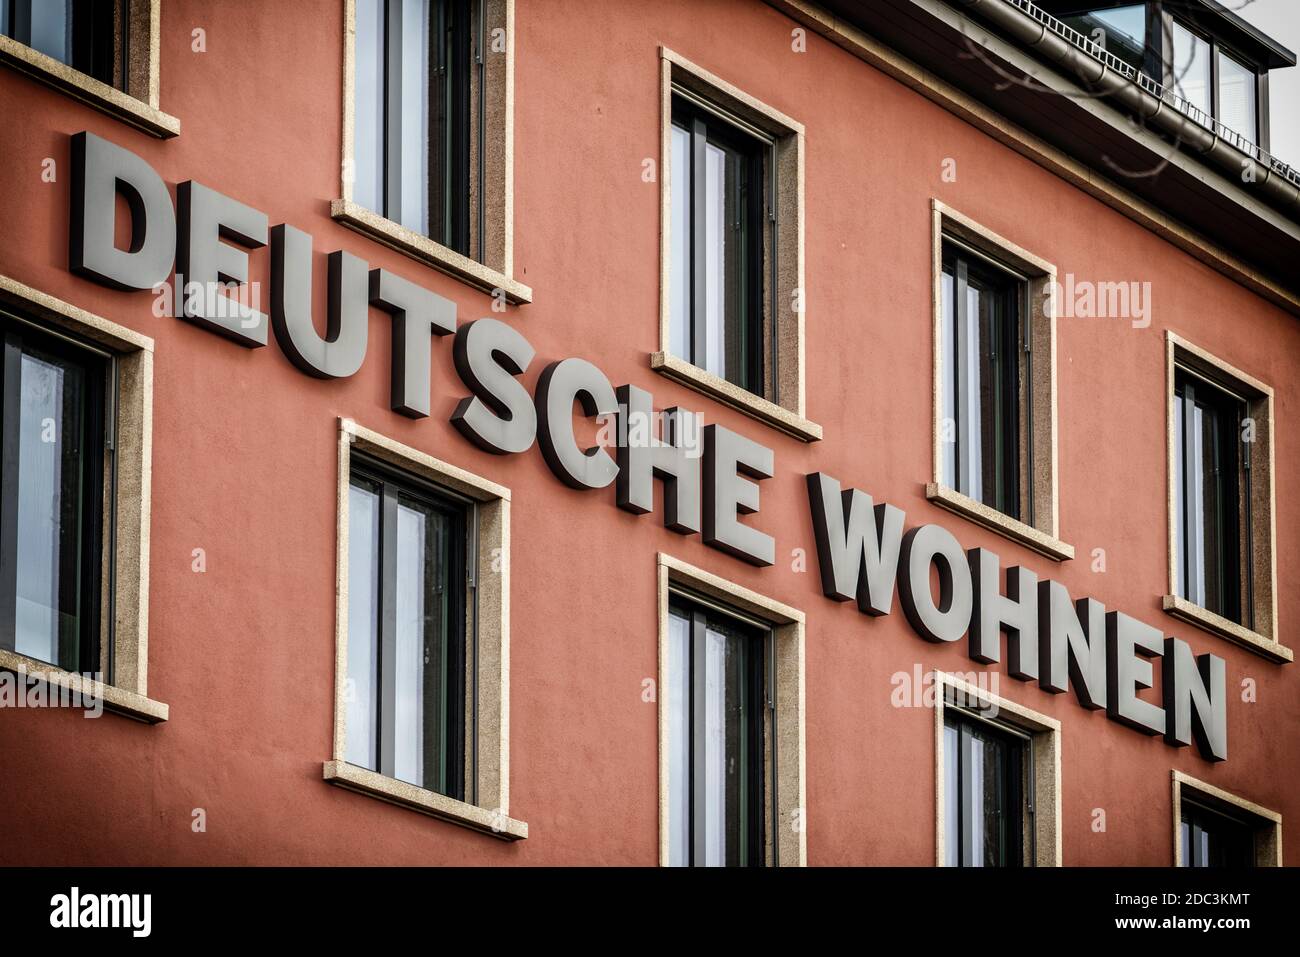 Firmensitz der Deutsche Wohnen Wohnungsgesellschaft, Immobiliengesellschaft in der Mecklenburgischen Strasse , Berlin, Stock Photo